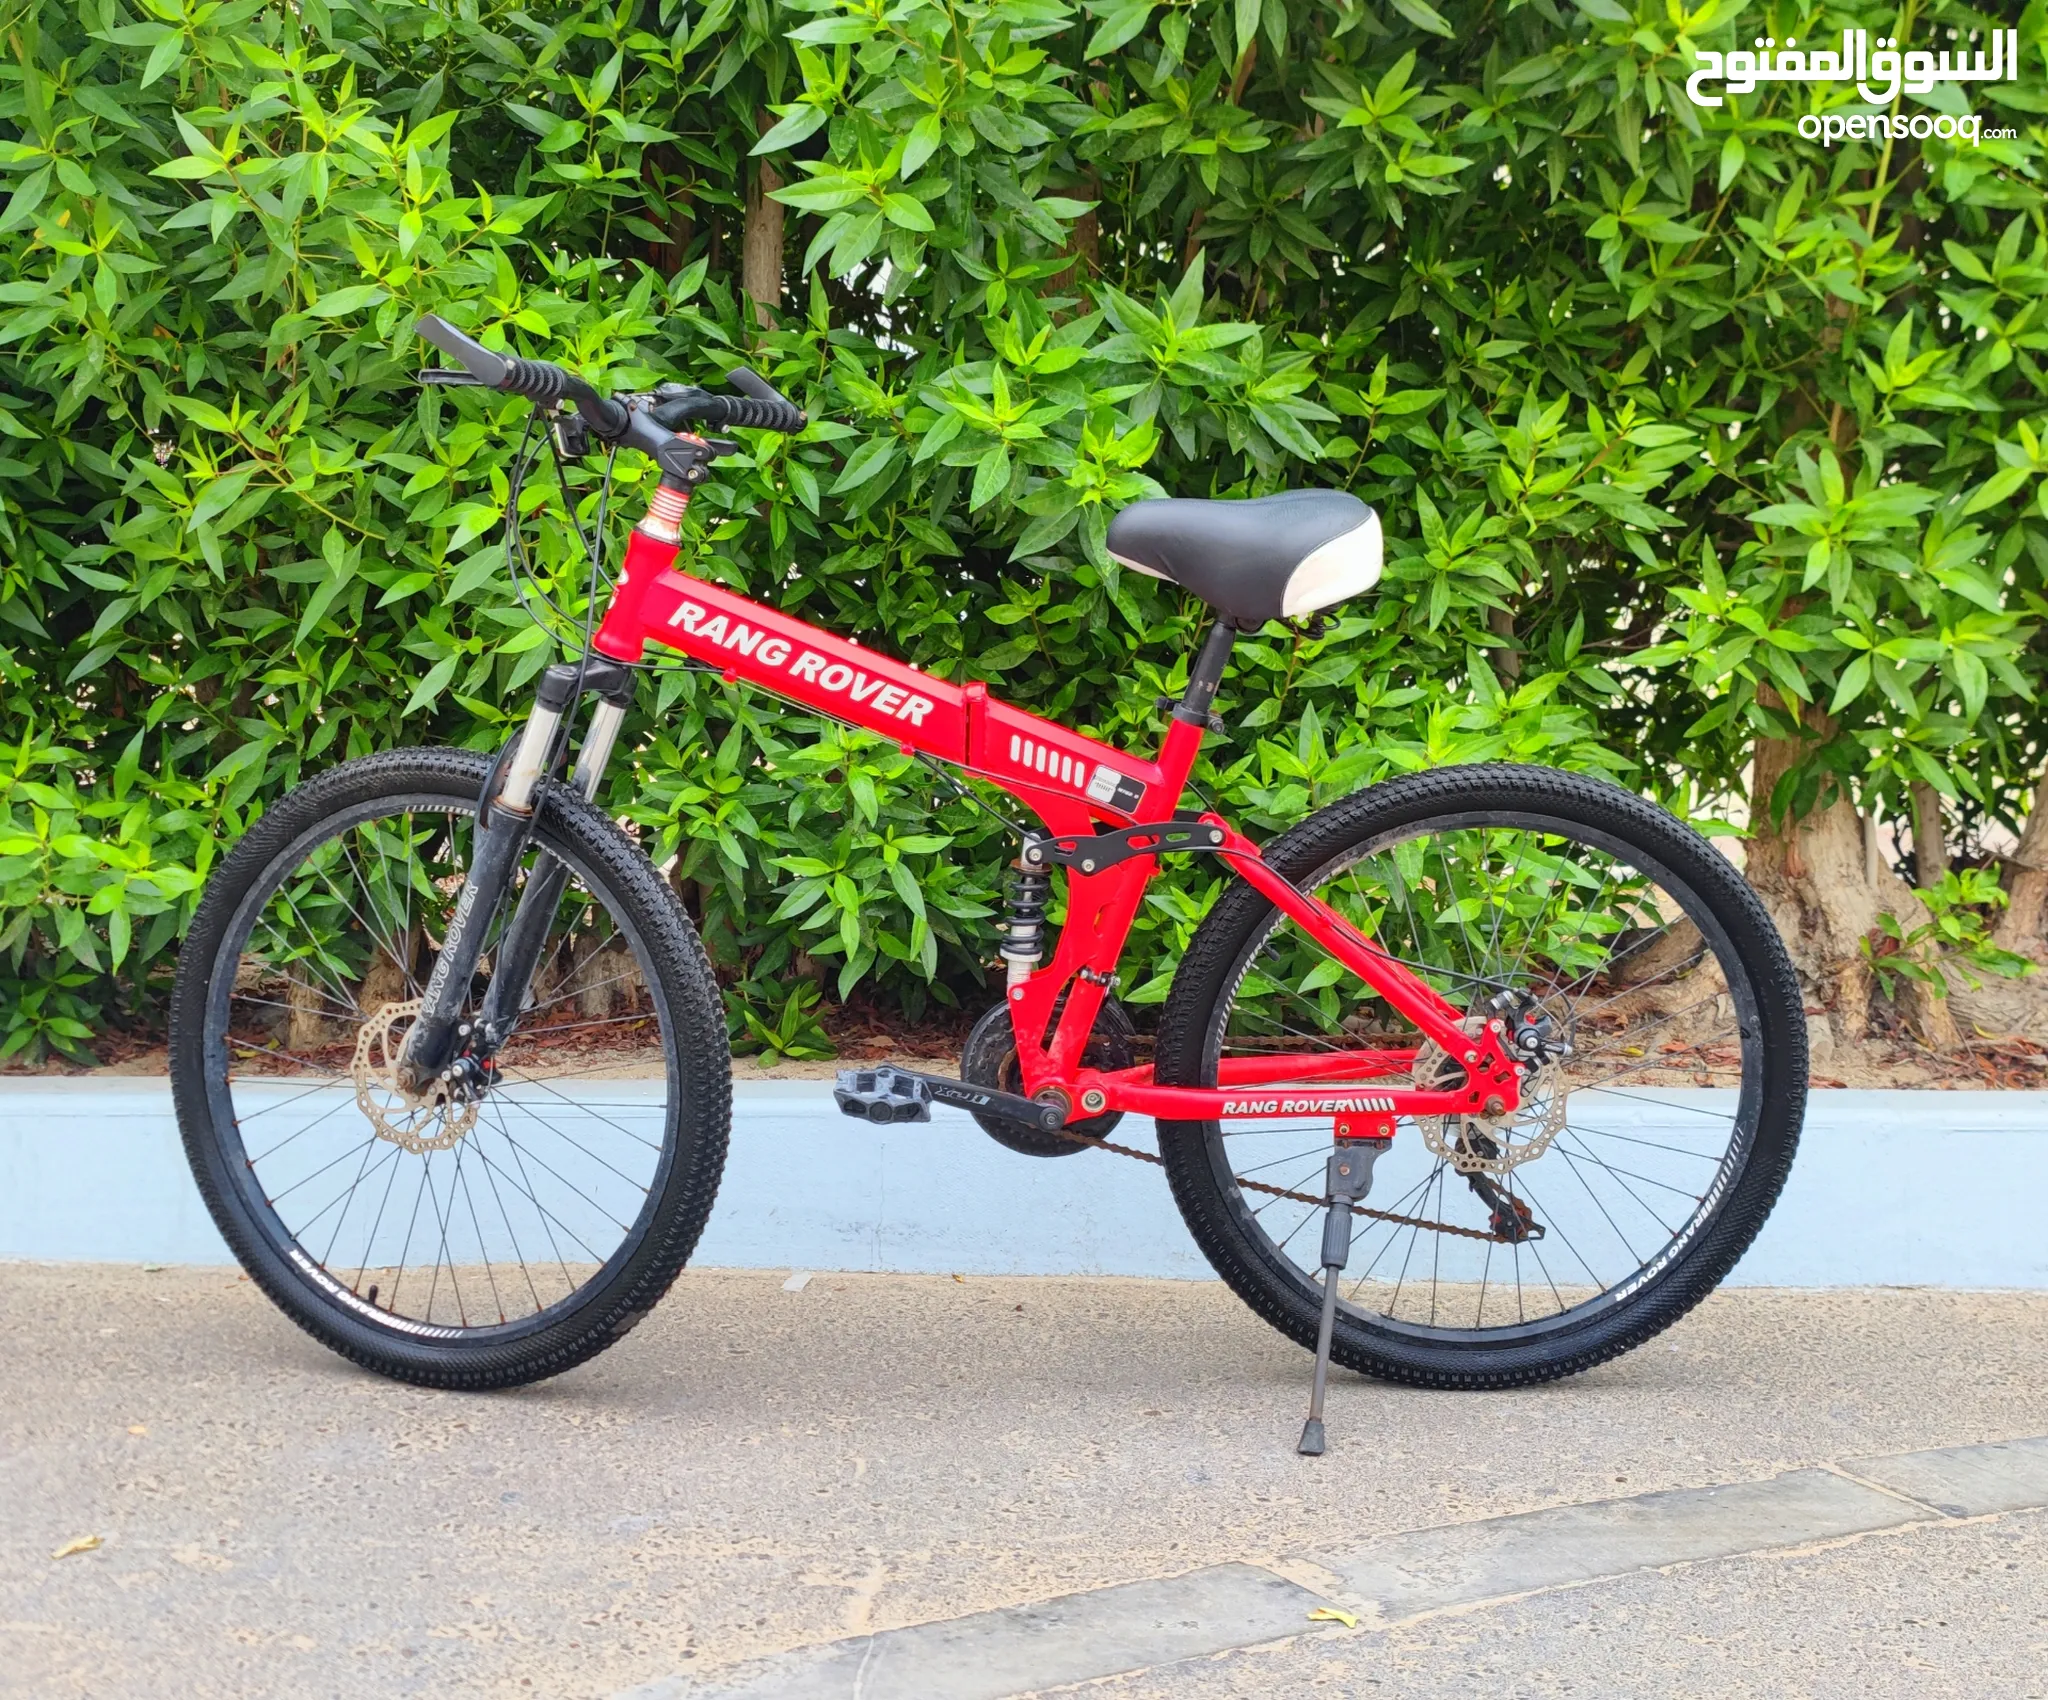 دراجات هوائية للبيع : دراجات على الطرق : جبلية : للأطفال : قطع غيار  واكسسوار : ارخص الاسعار في أبو ظبي | السوق المفتوح